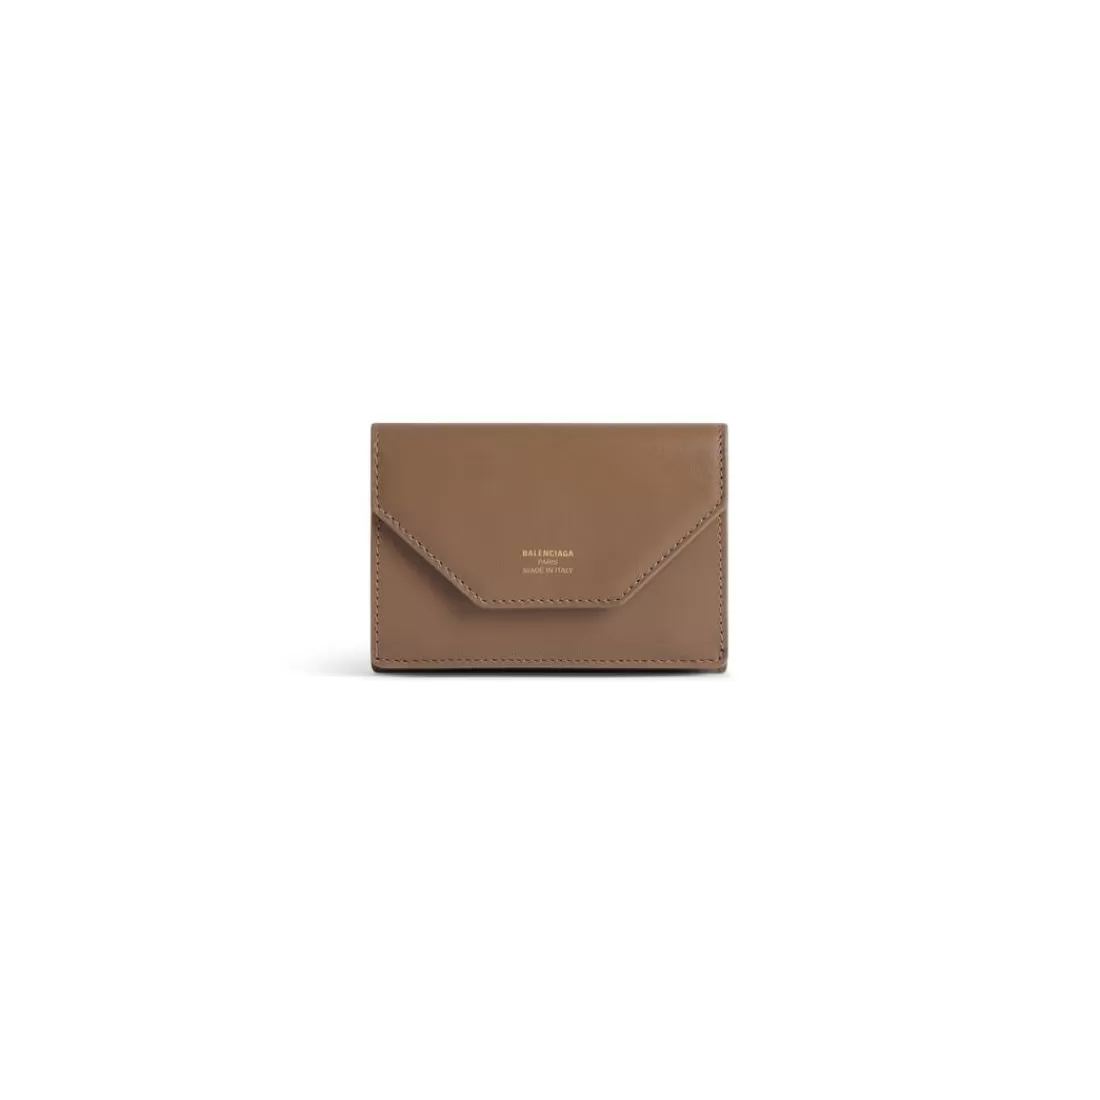 ENVELOPE | PORTAFOGLI>Balenciaga Portafoglio Envelope Mini  da Donna in Marrone Chiaro